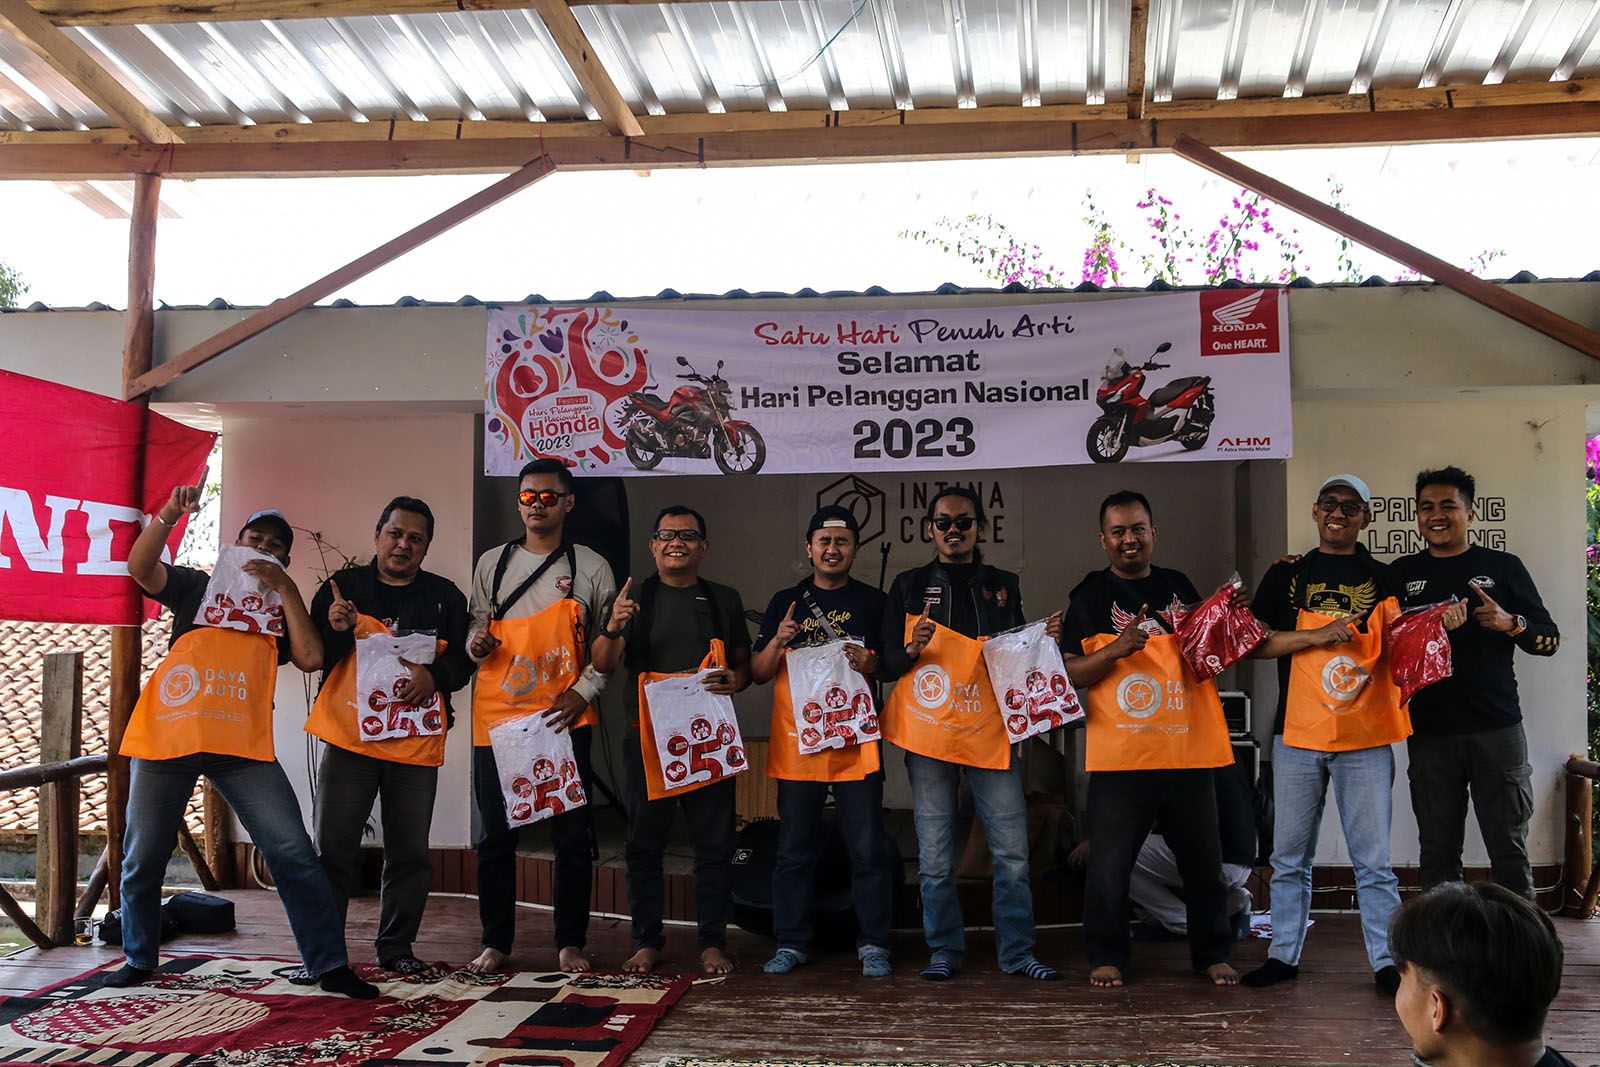 DAM Apresiasi Komunitas Honda Melalui “Fun Touring with Honda Community To Gunung Puntang”